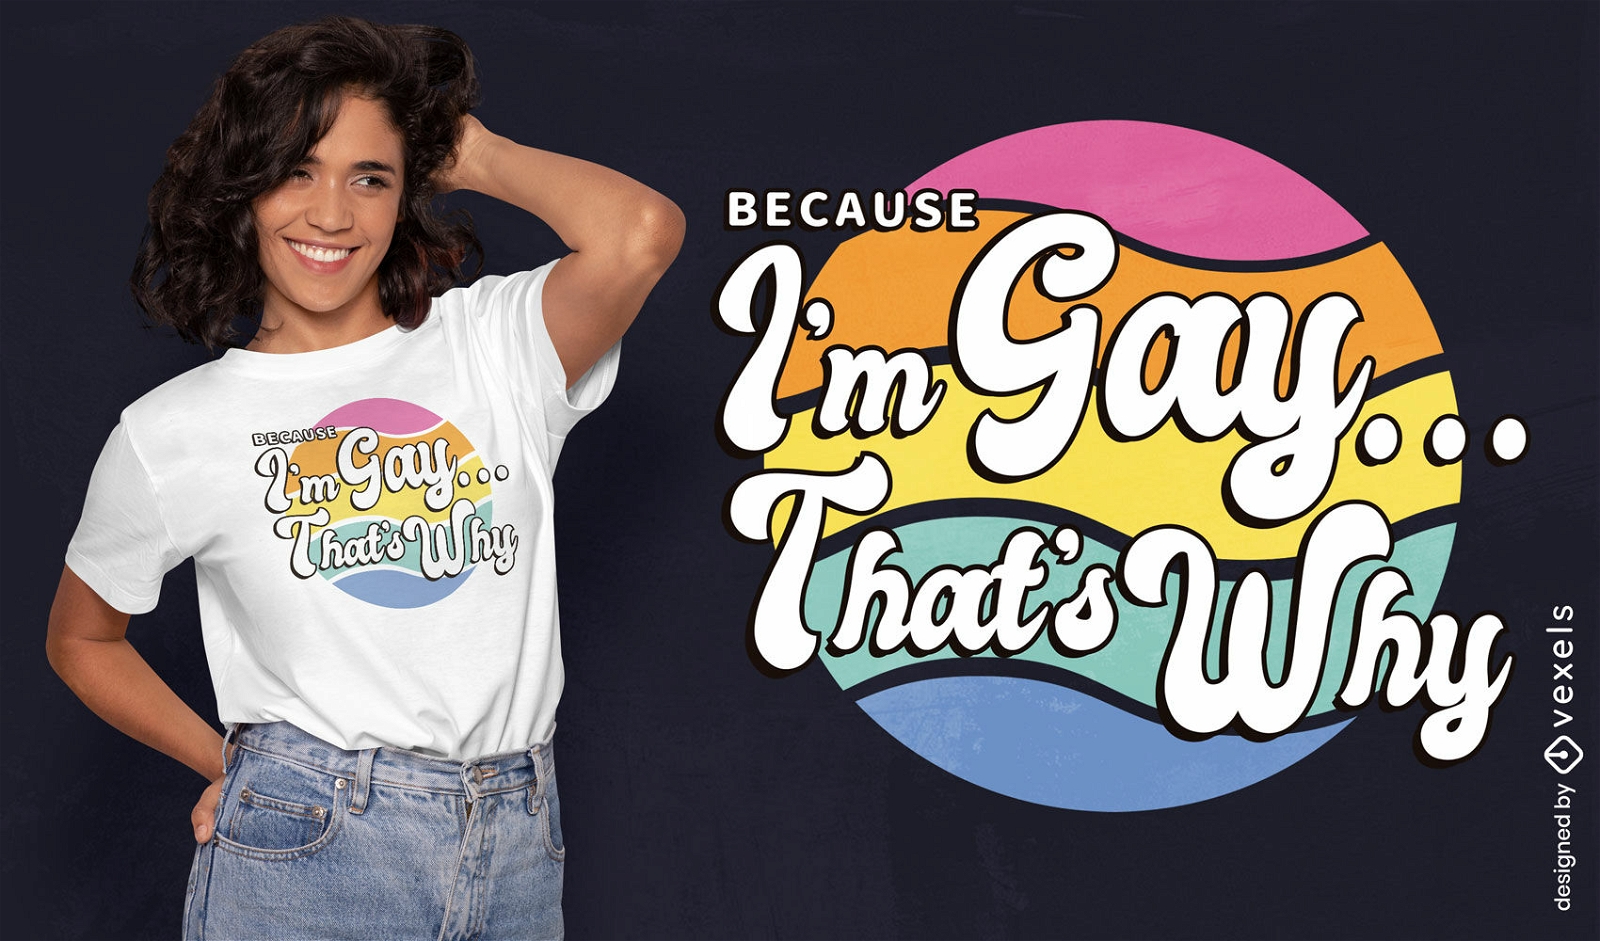 Because I'm gay retro quote t-shirt design